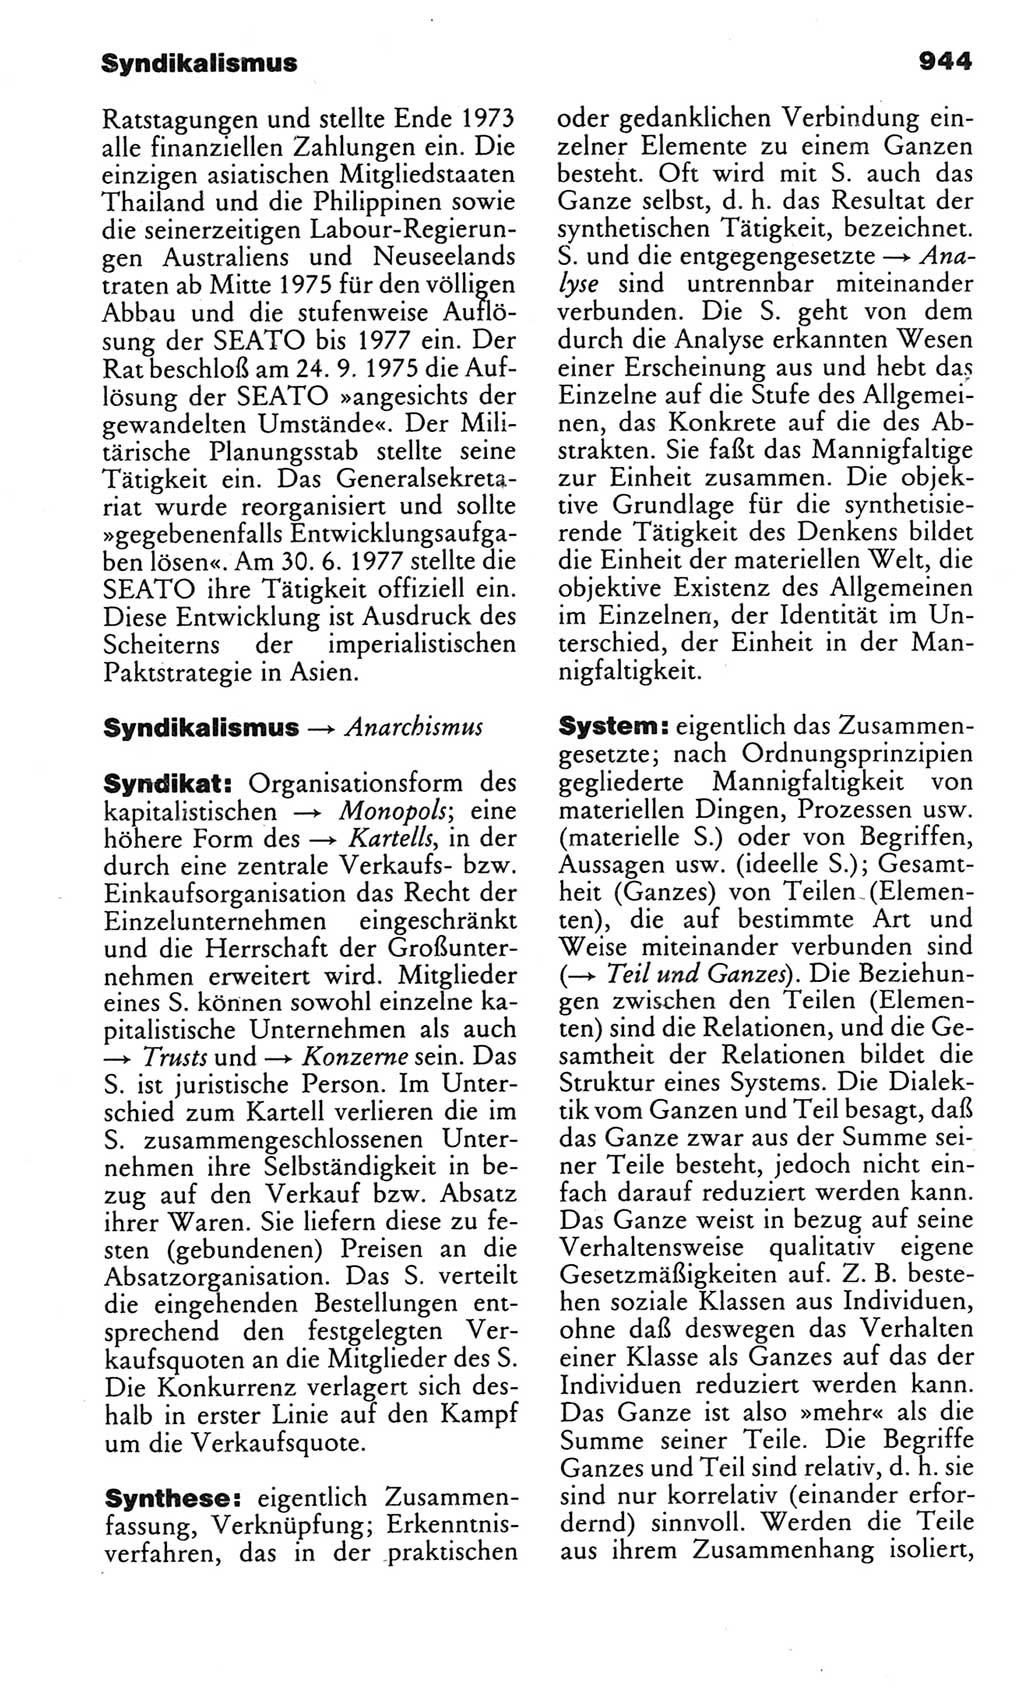 Kleines politisches Wörterbuch [Deutsche Demokratische Republik (DDR)] 1983, Seite 944 (Kl. pol. Wb. DDR 1983, S. 944)